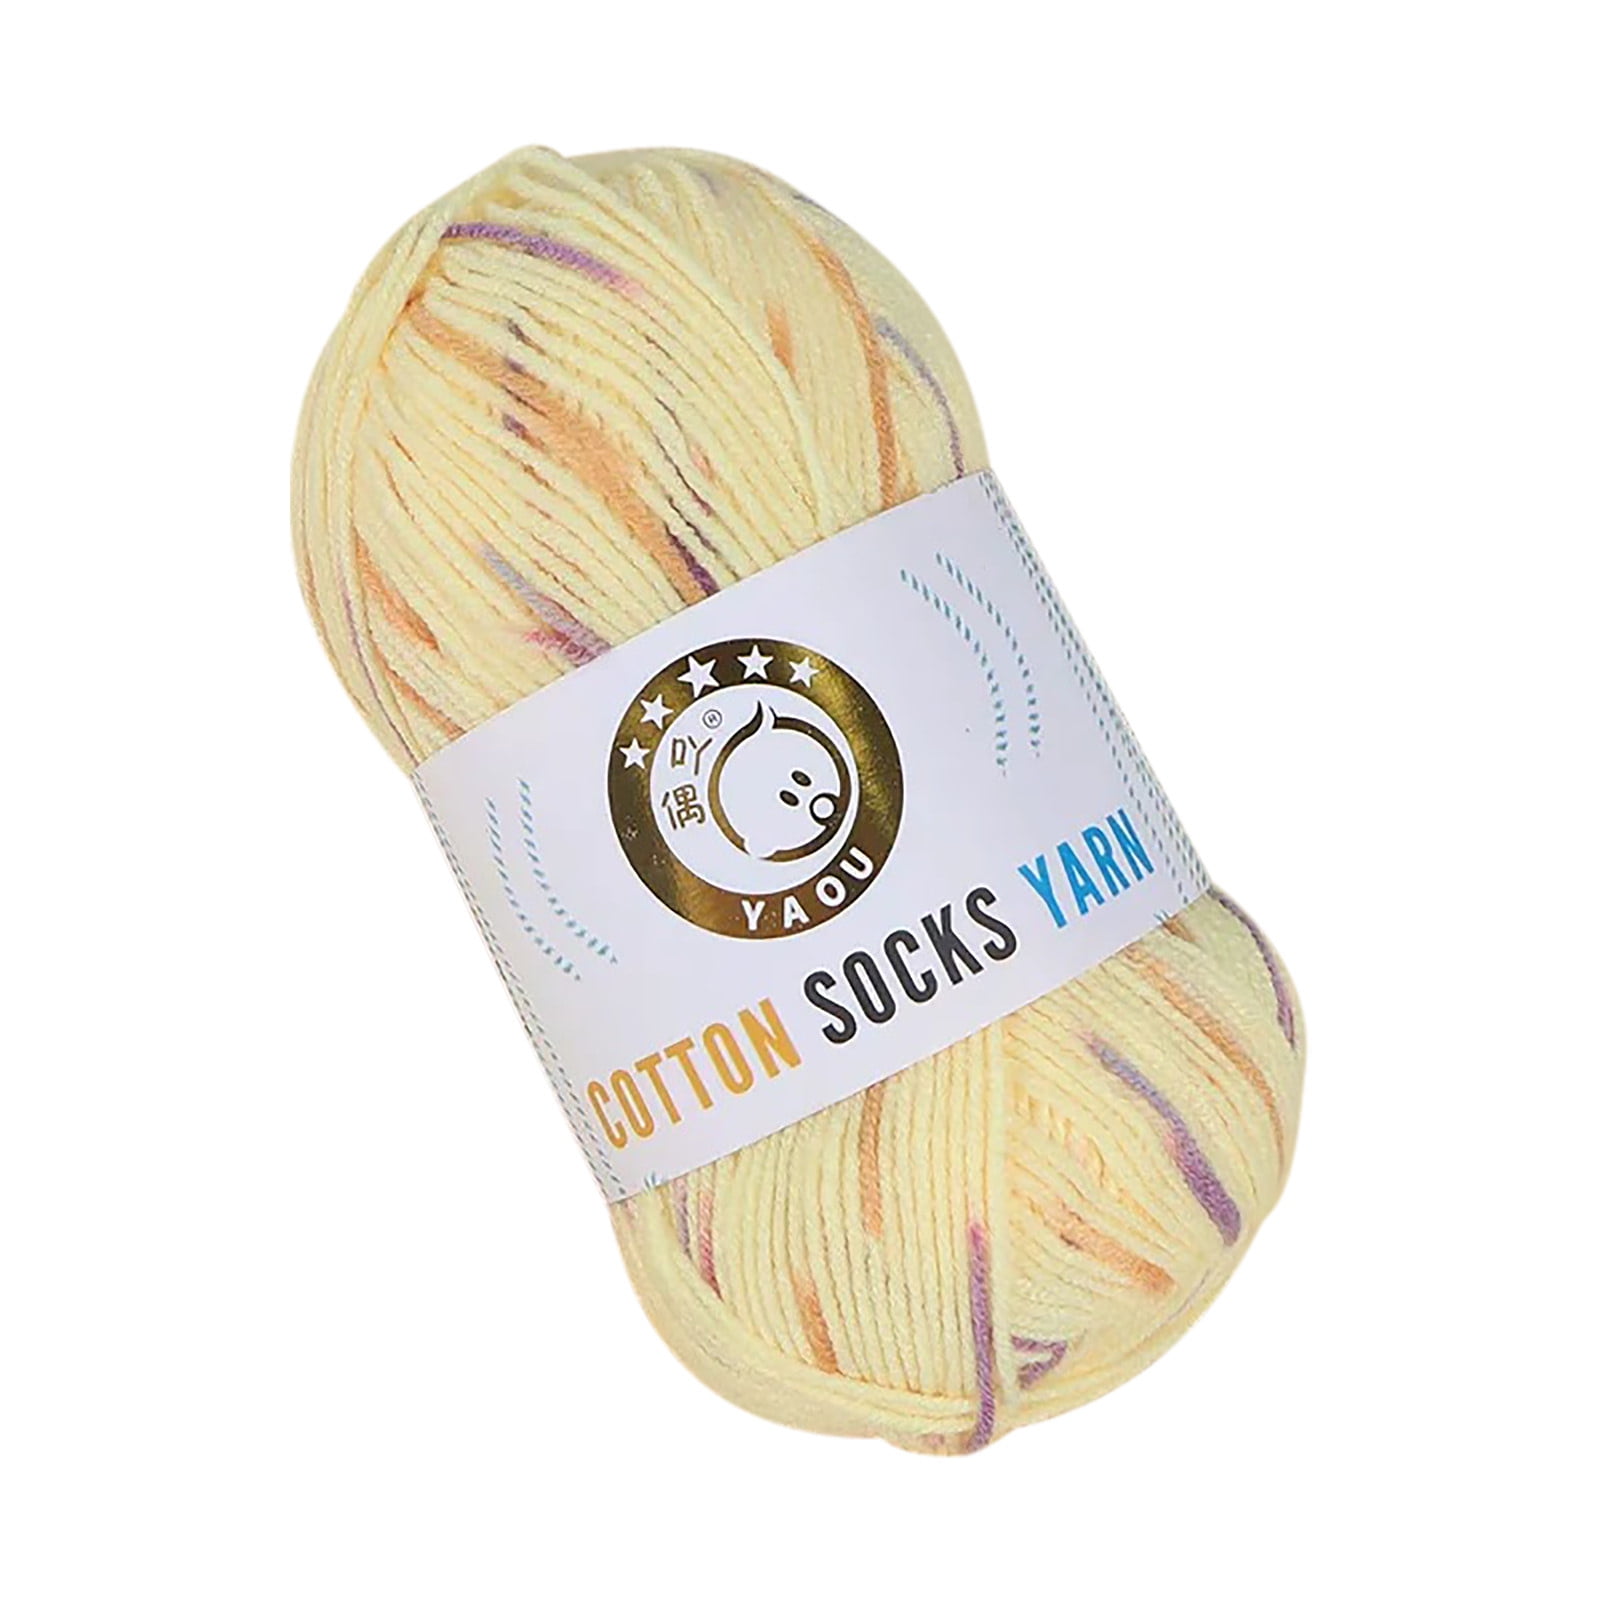 Yarn for Crocheting,Soft Yarn 1PCS Yarn for Crocheting Blankets Acrylic  Crochet Yarn for Sweater,Hat,Socks,Baby Blankets